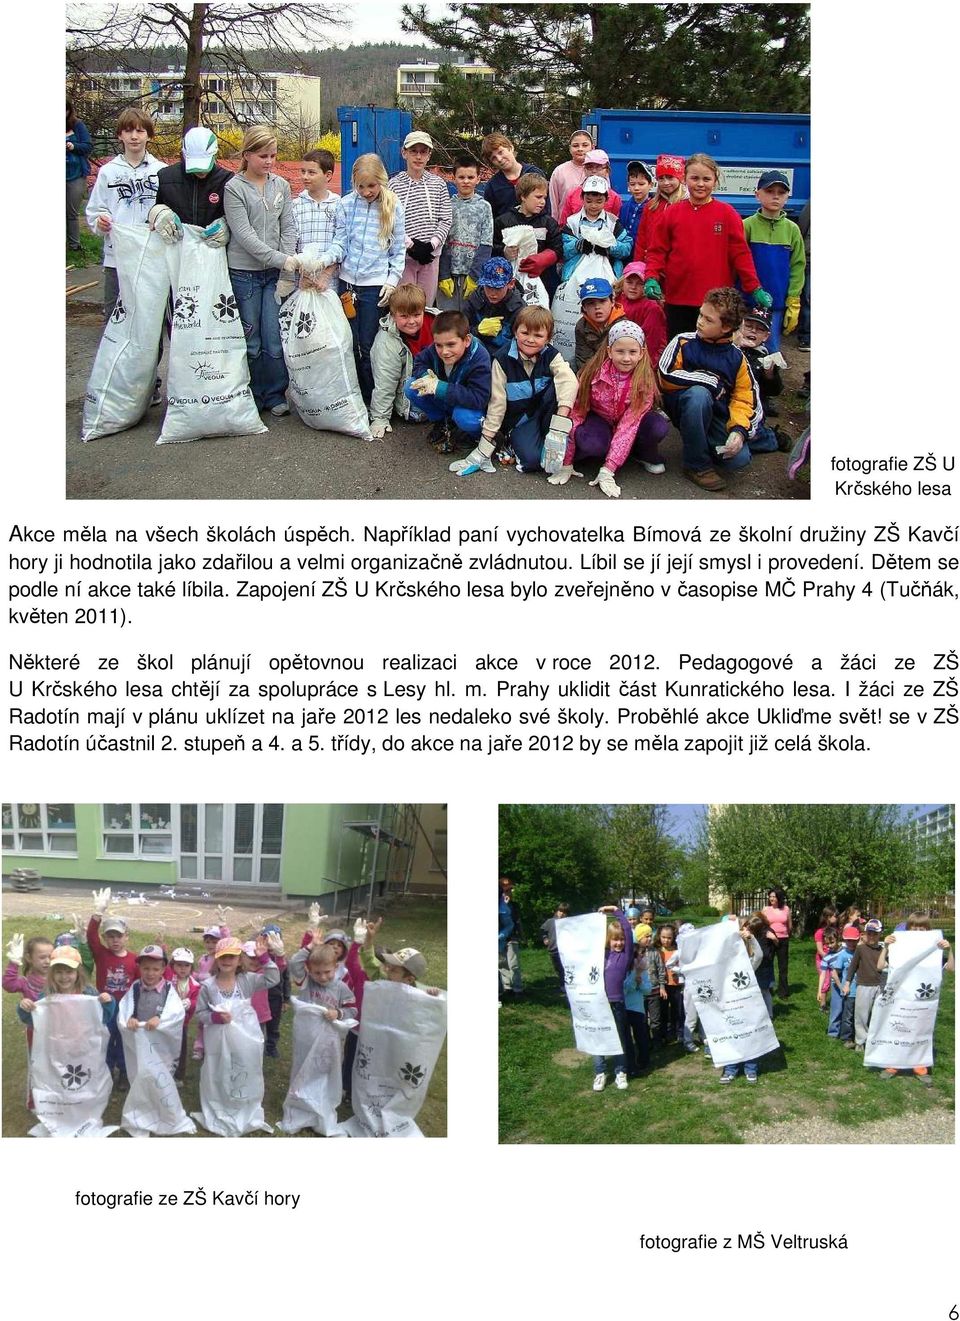 Některé ze škol plánují opětovnou realizaci akce v roce 2012. Pedagogové a žáci ze ZŠ U Krčského lesa chtějí za spolupráce s Lesy hl. m. Prahy uklidit část Kunratického lesa.